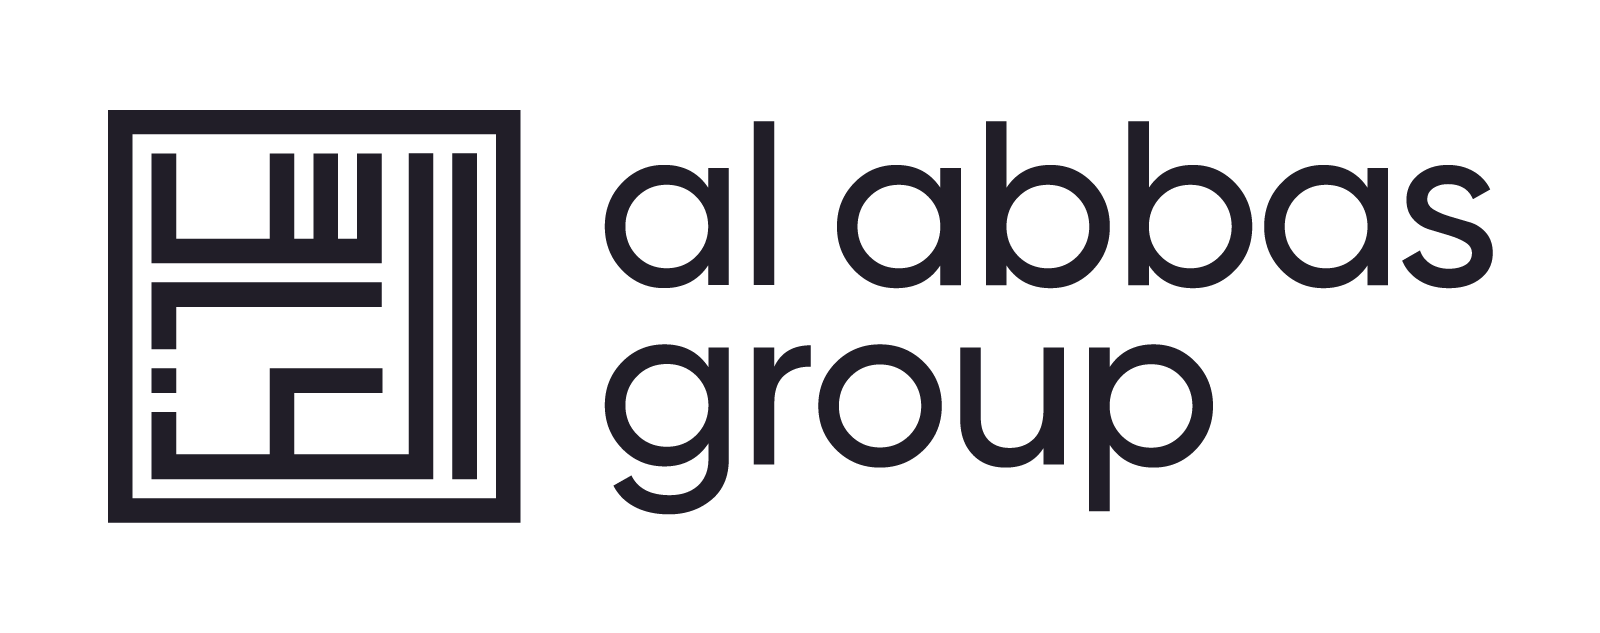 Al Abbas Group